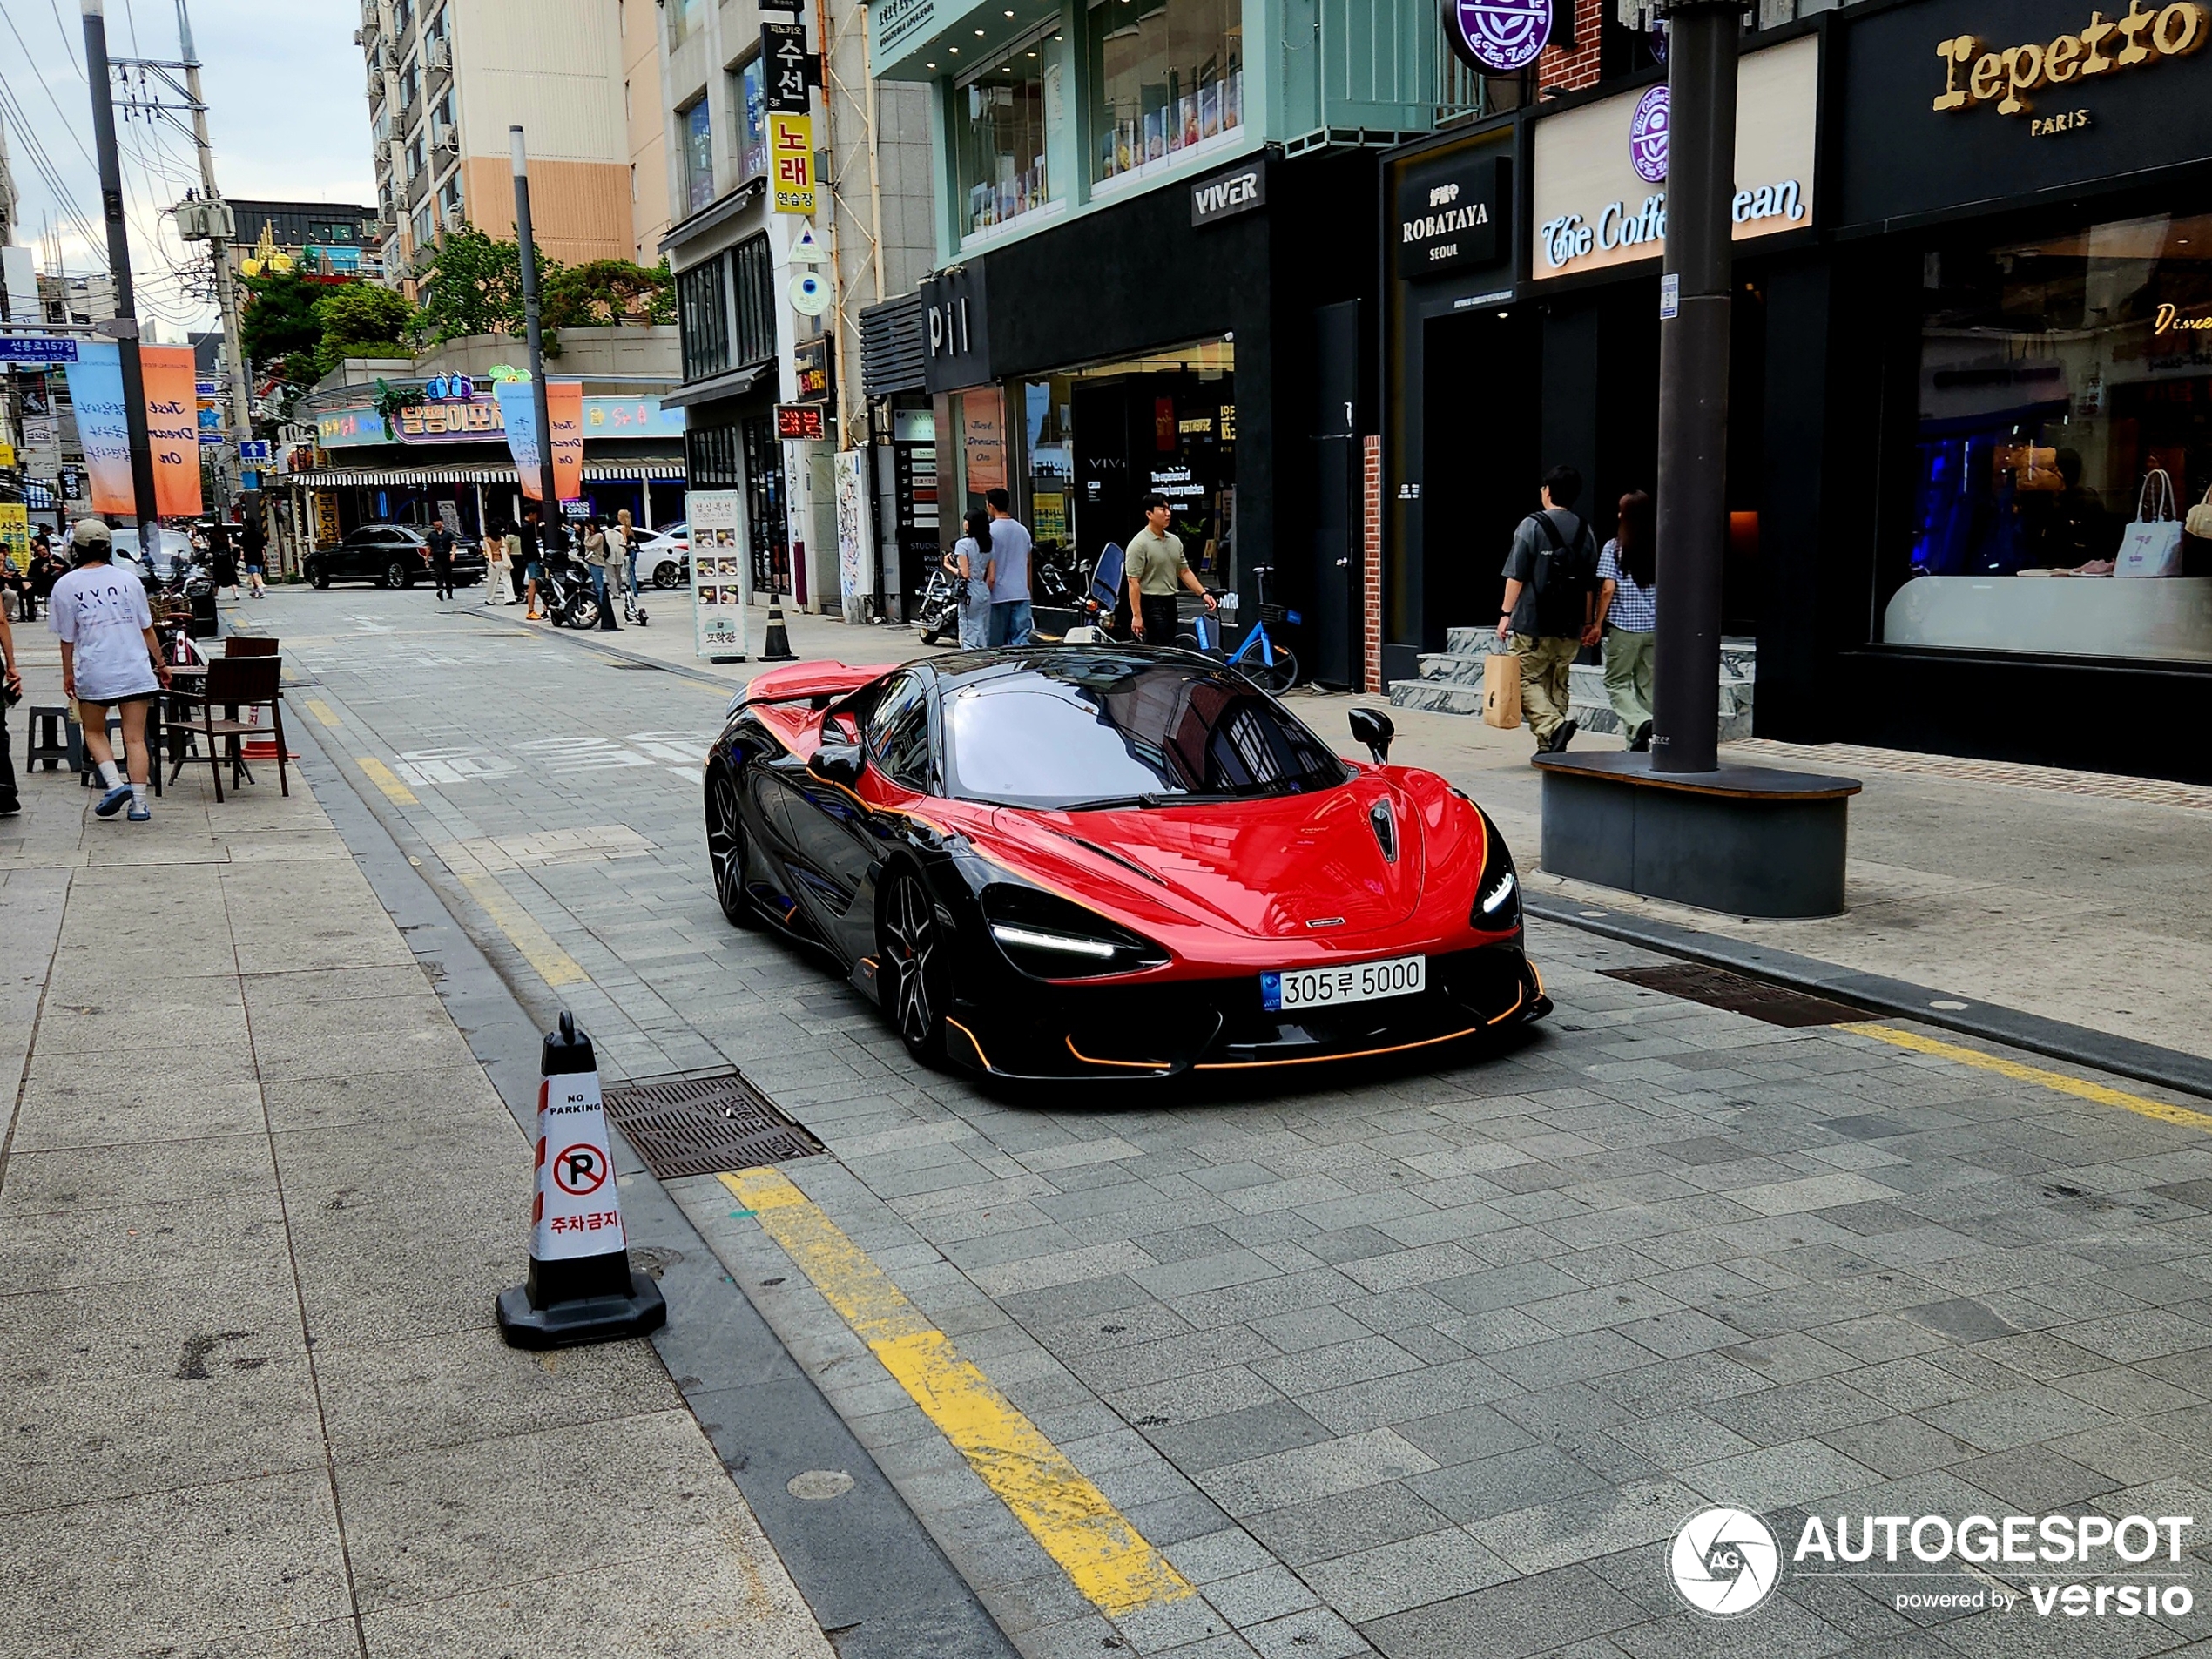 Zuid-Koreaanse McLaren heeft iets teveel kleurtjes